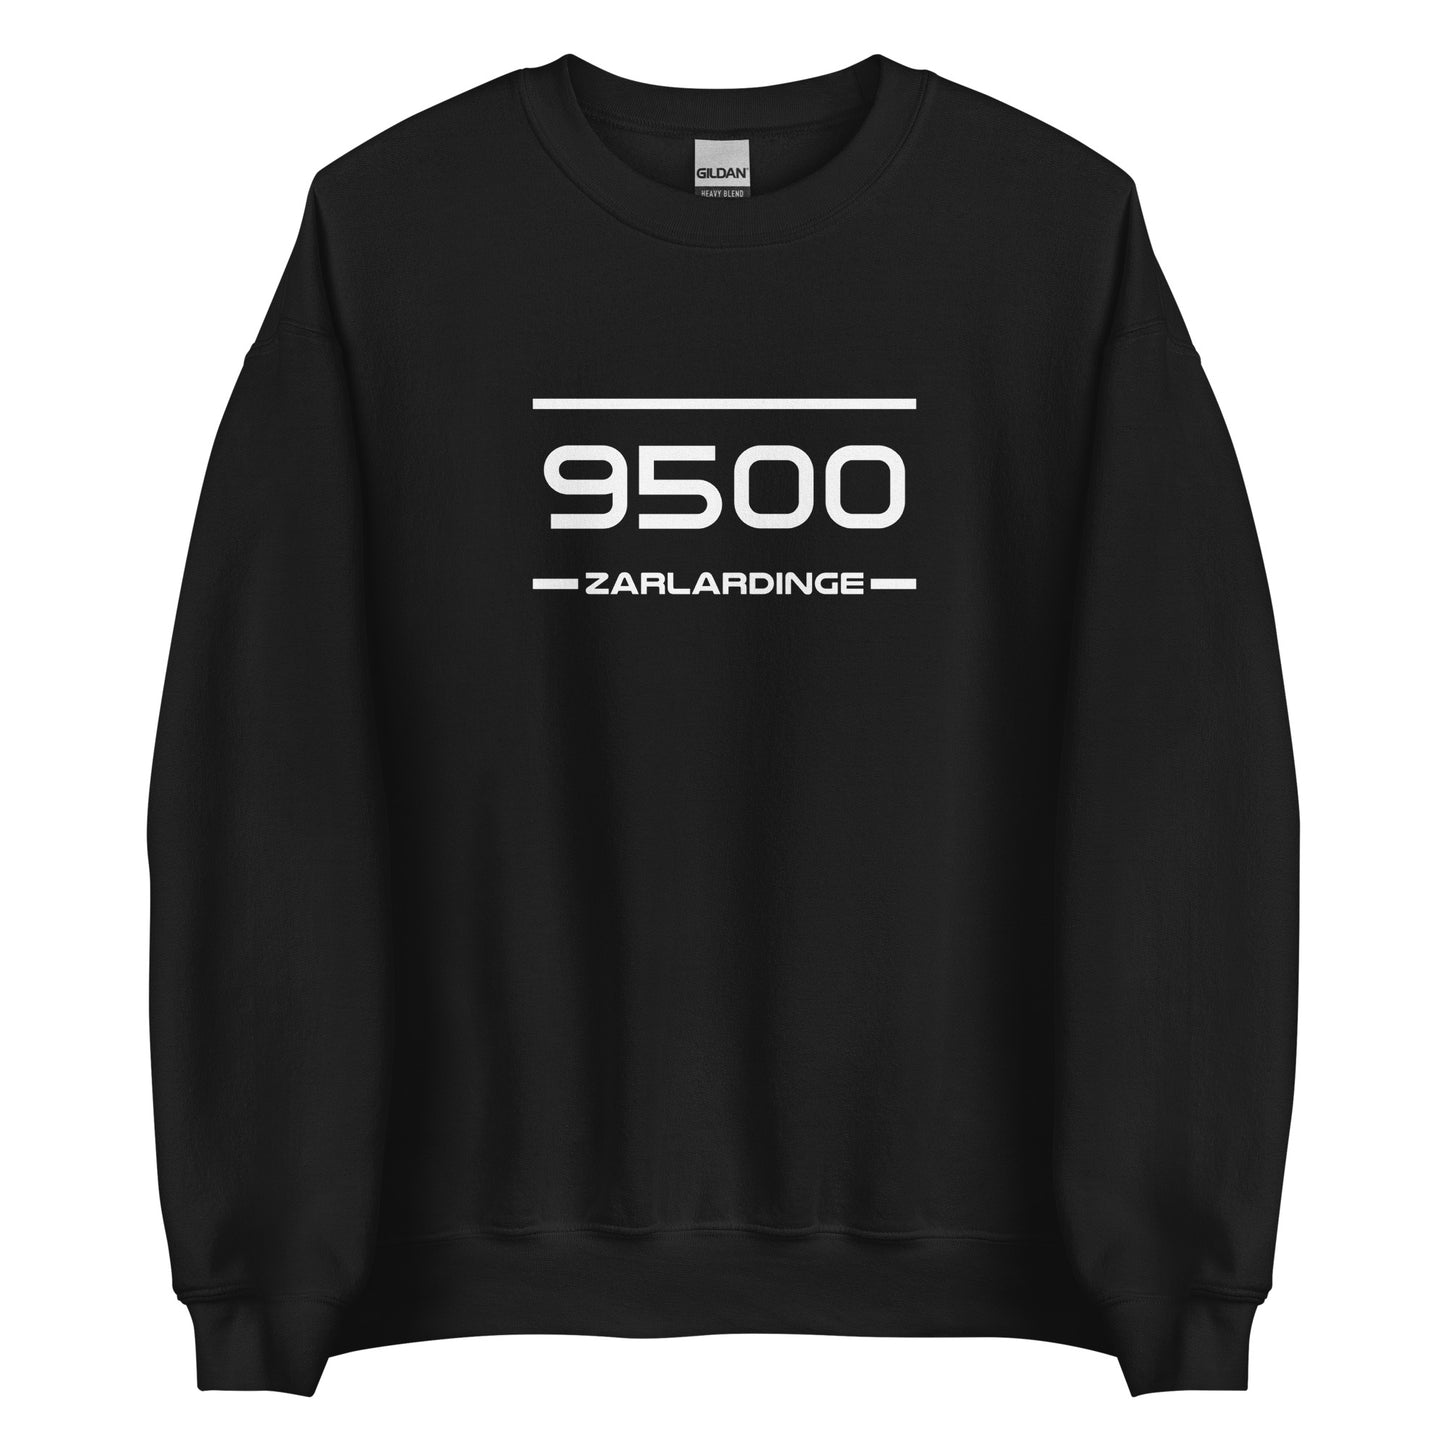 Sweater - 9500 - Zarlardinge (M/V)